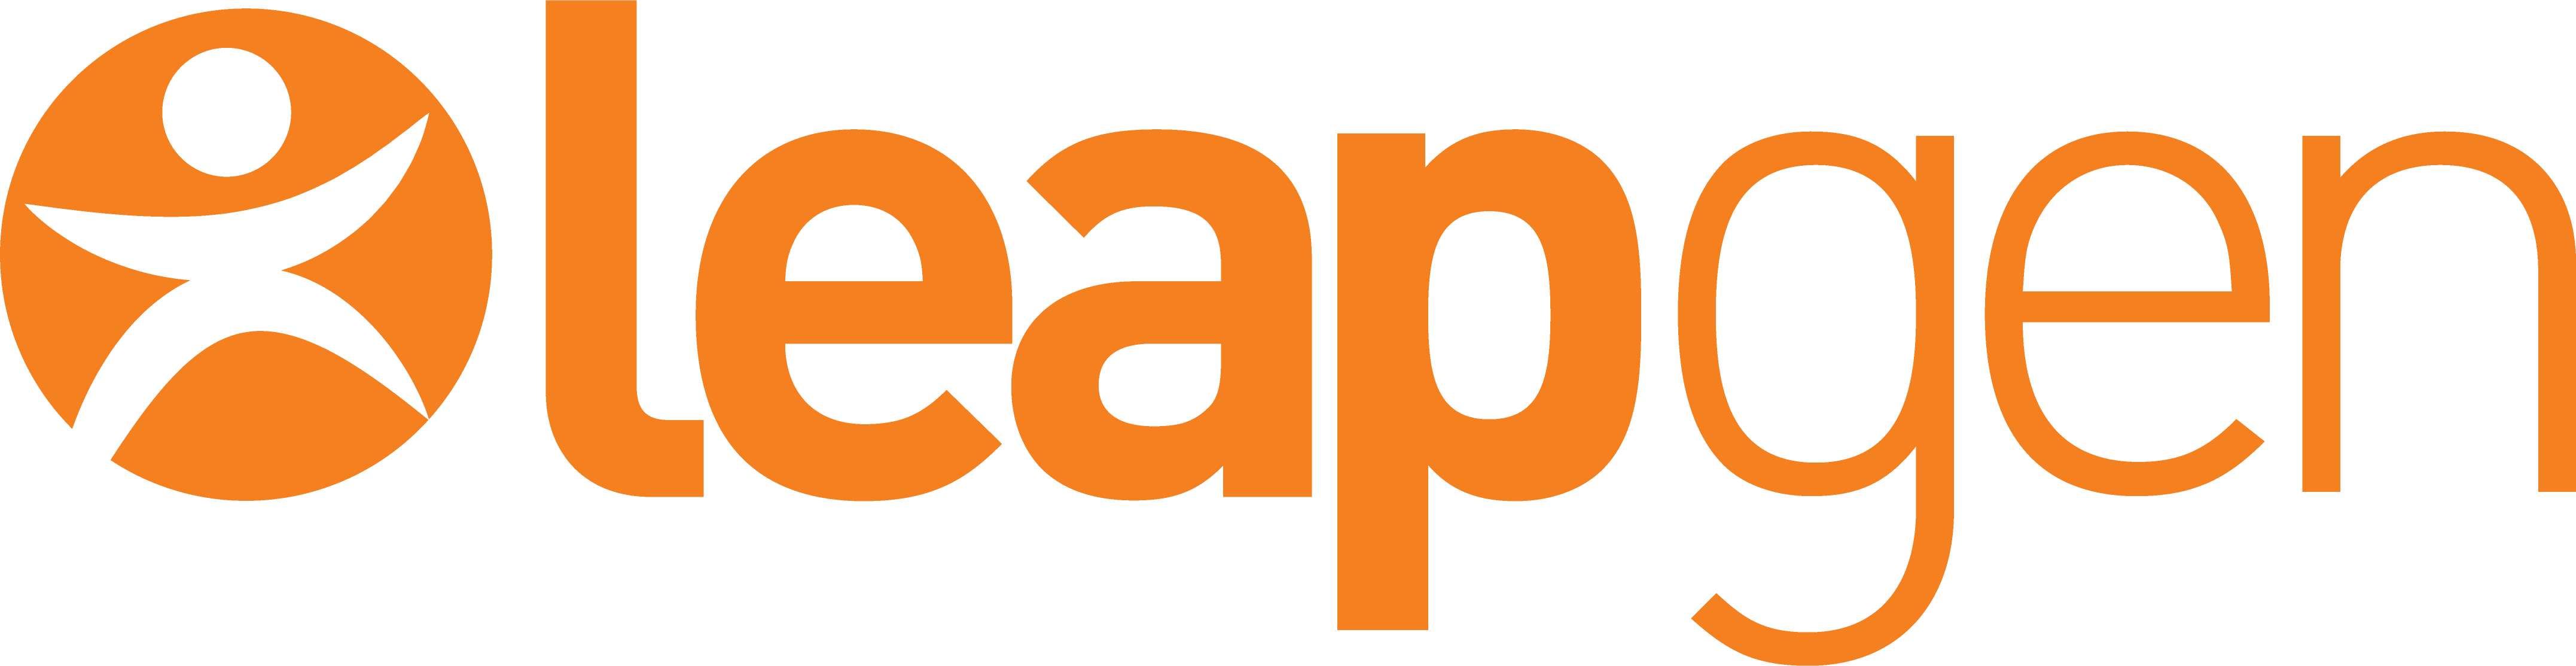 Leapgen Logo